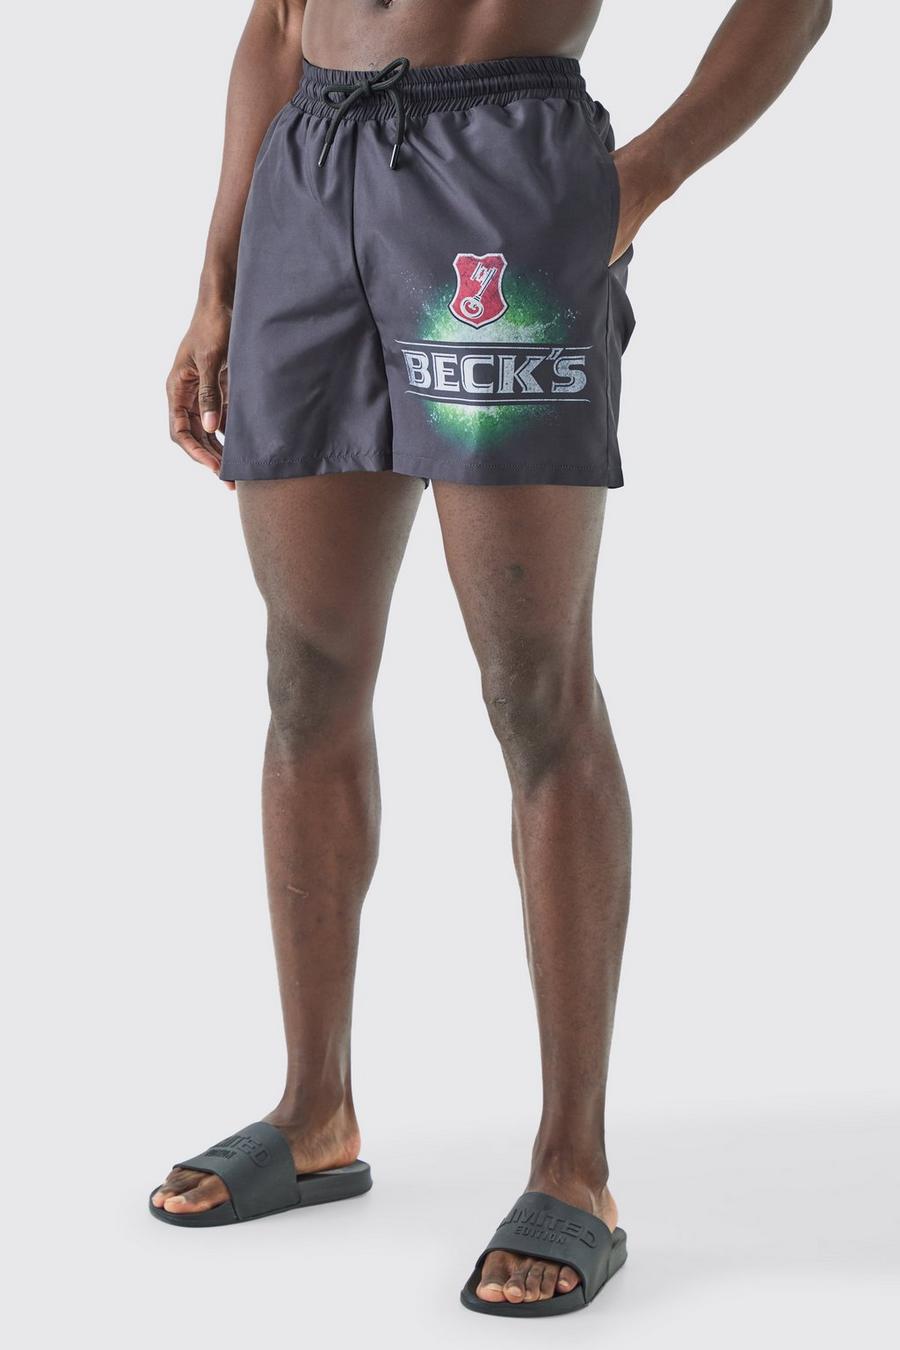 Black Short Length Becks License Swim Short